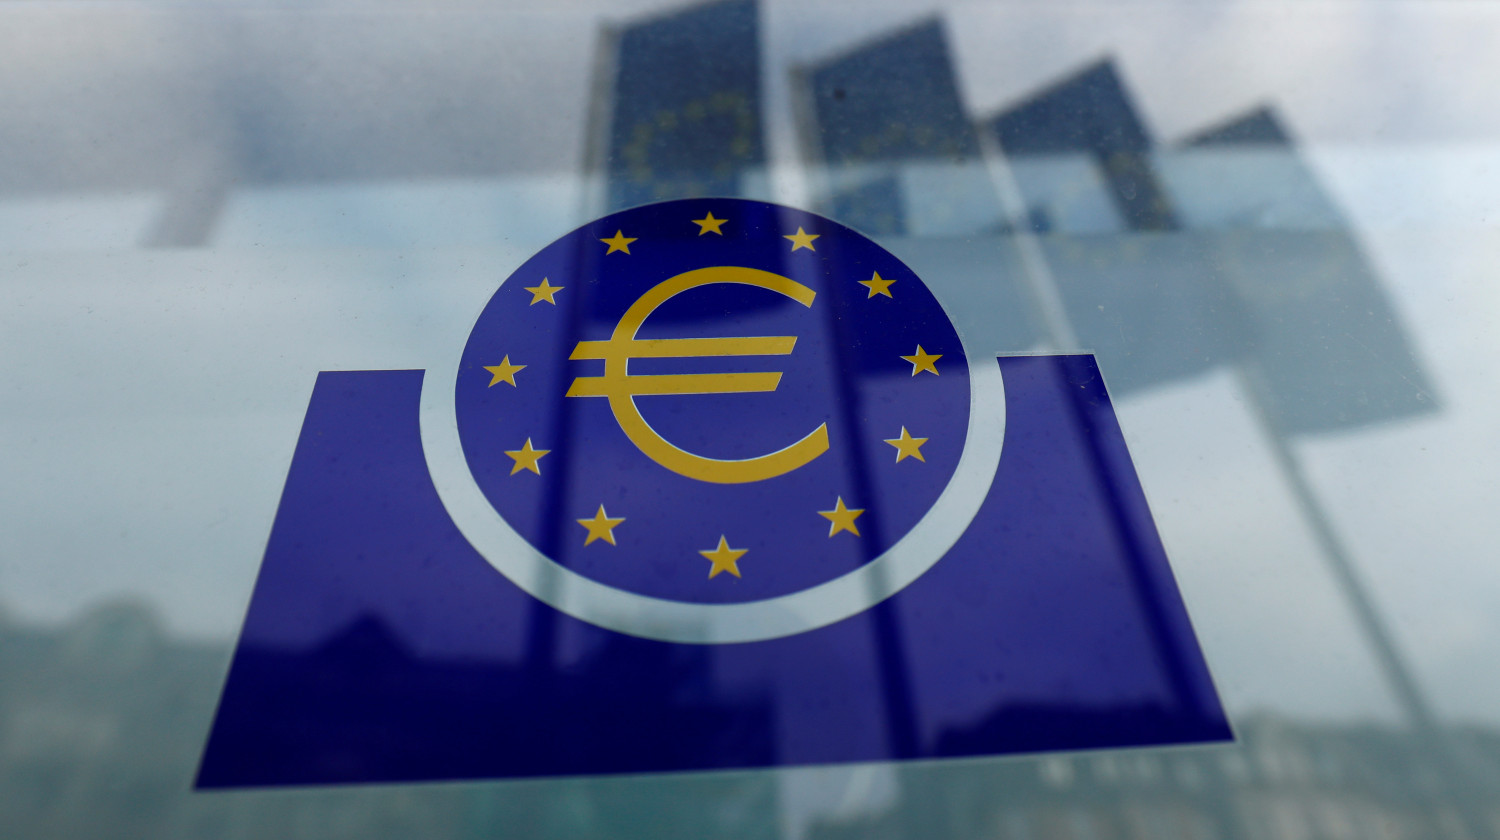 photo d archives du logo de la banque centrale europeenne bce a francfort 20221118132316 